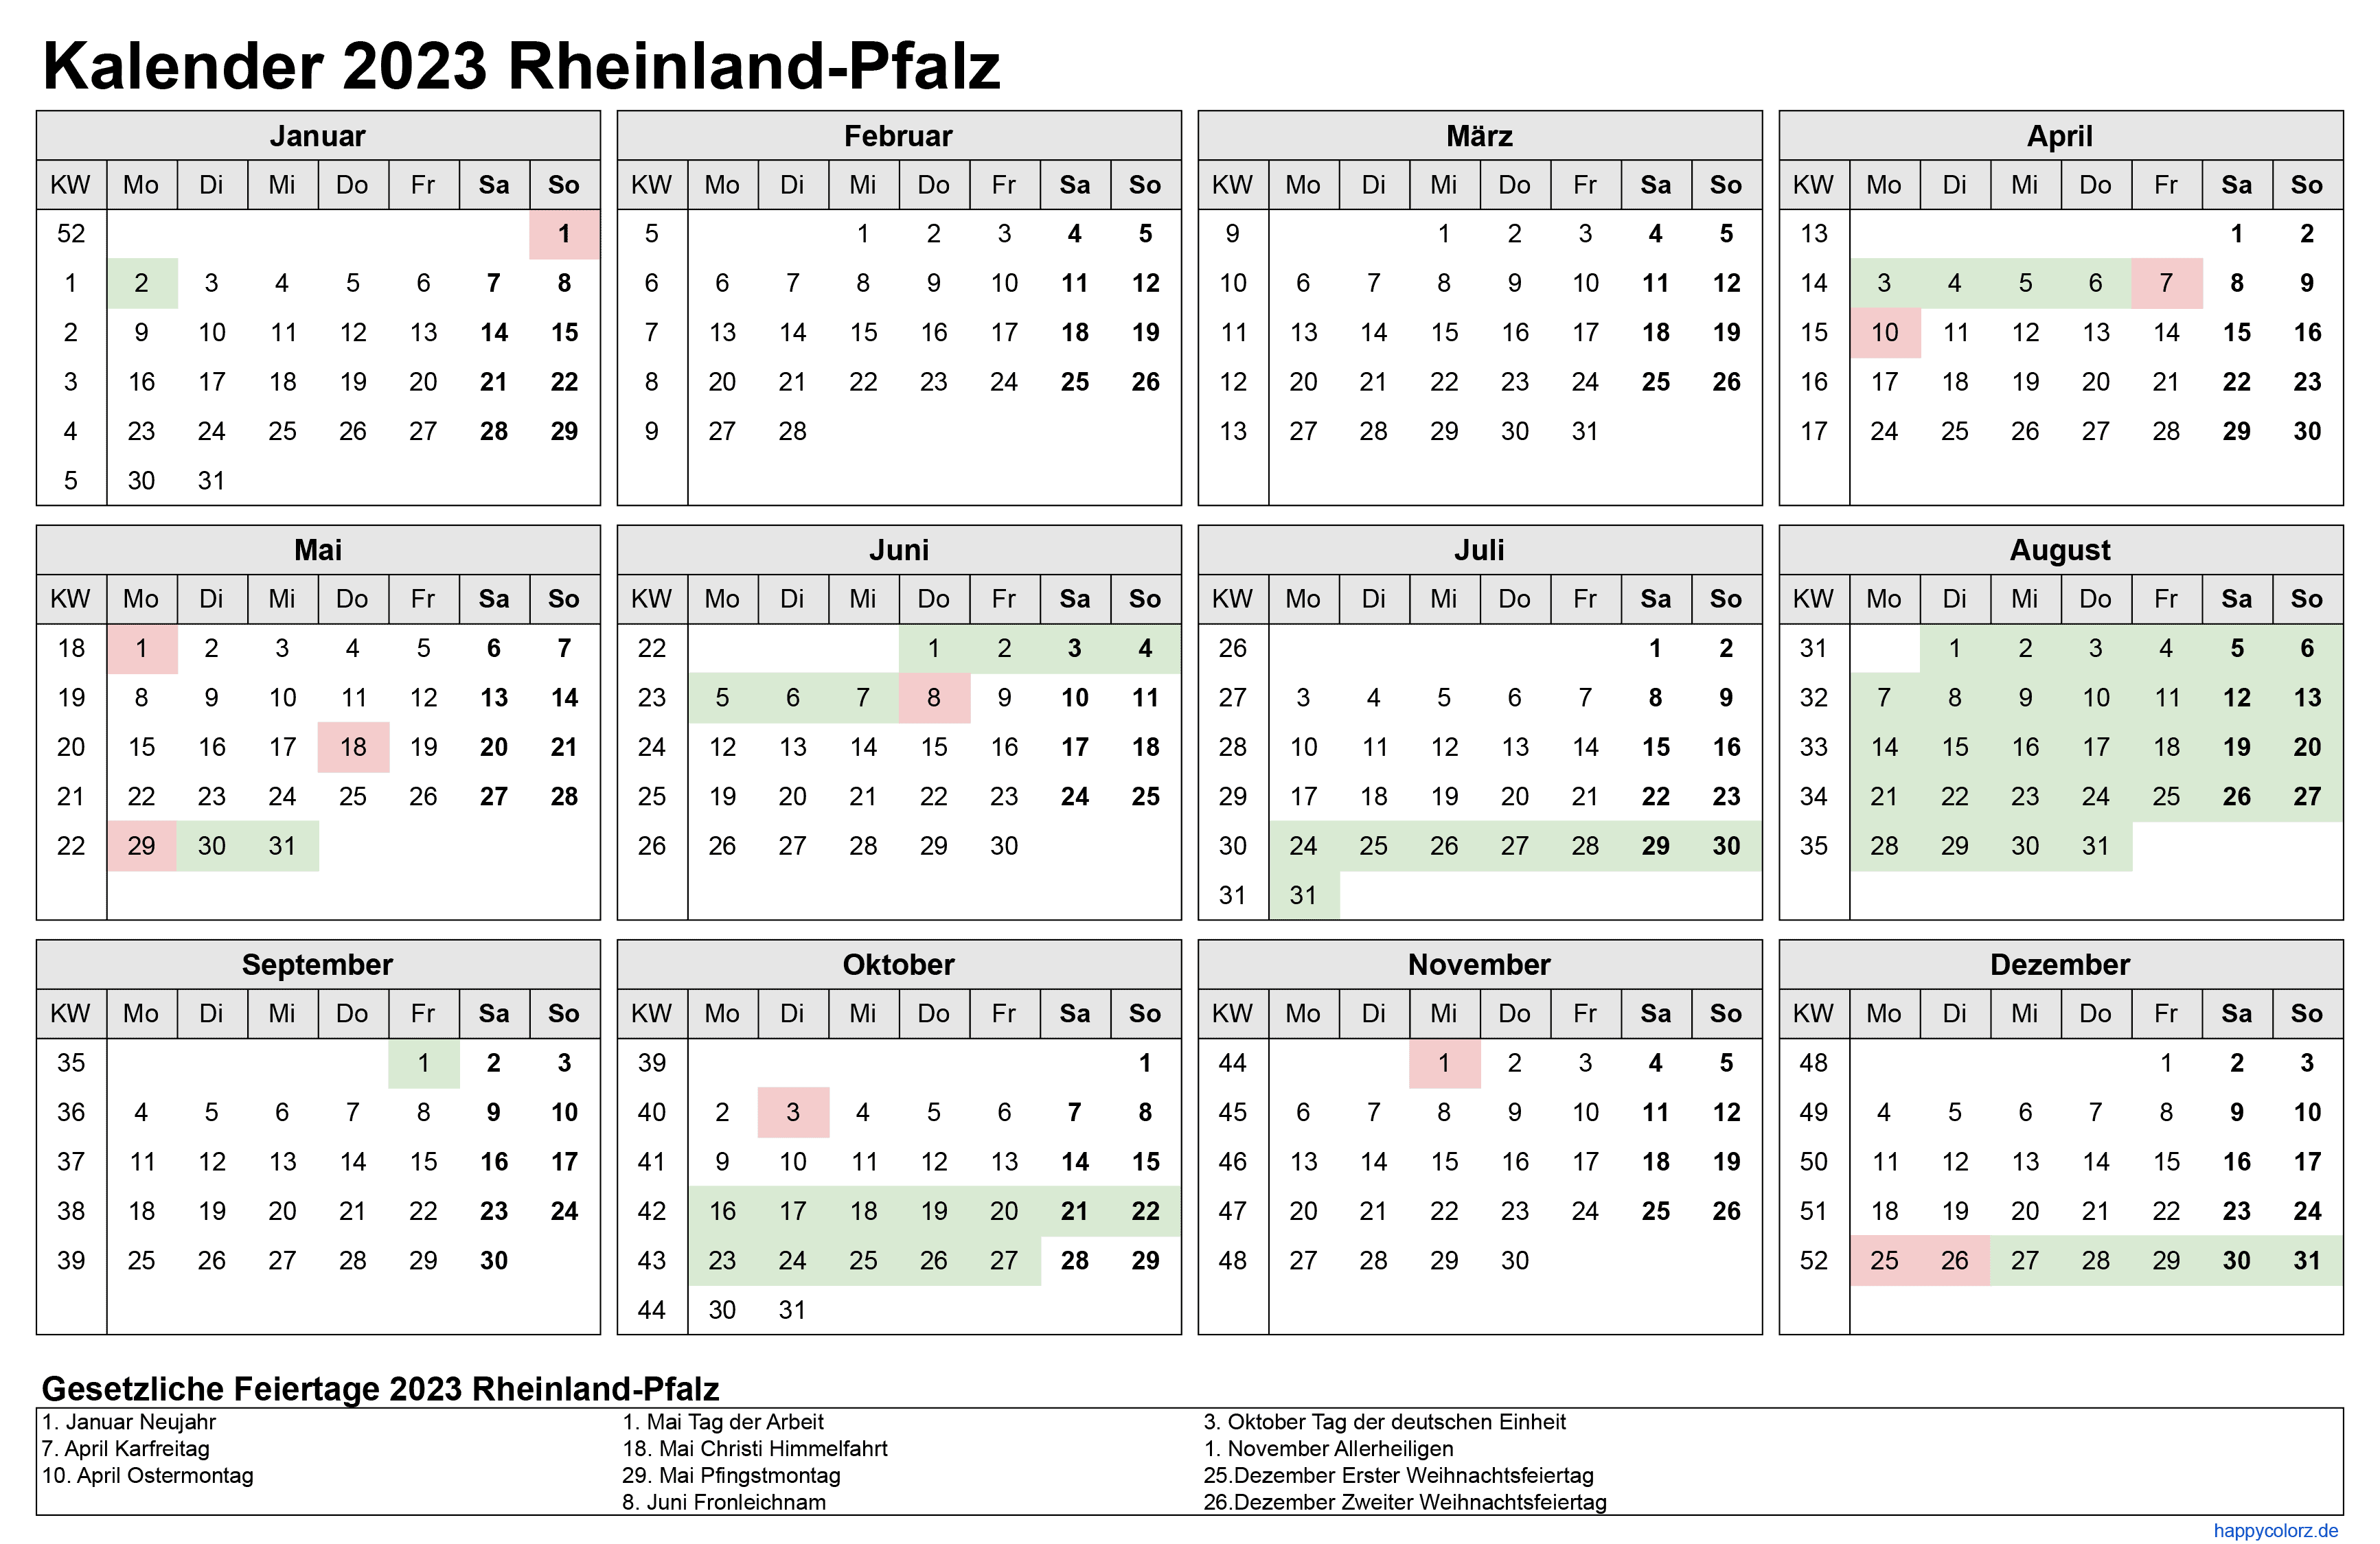 Kalender 2023 Rheinland-Pfalz zum Ausdrucken